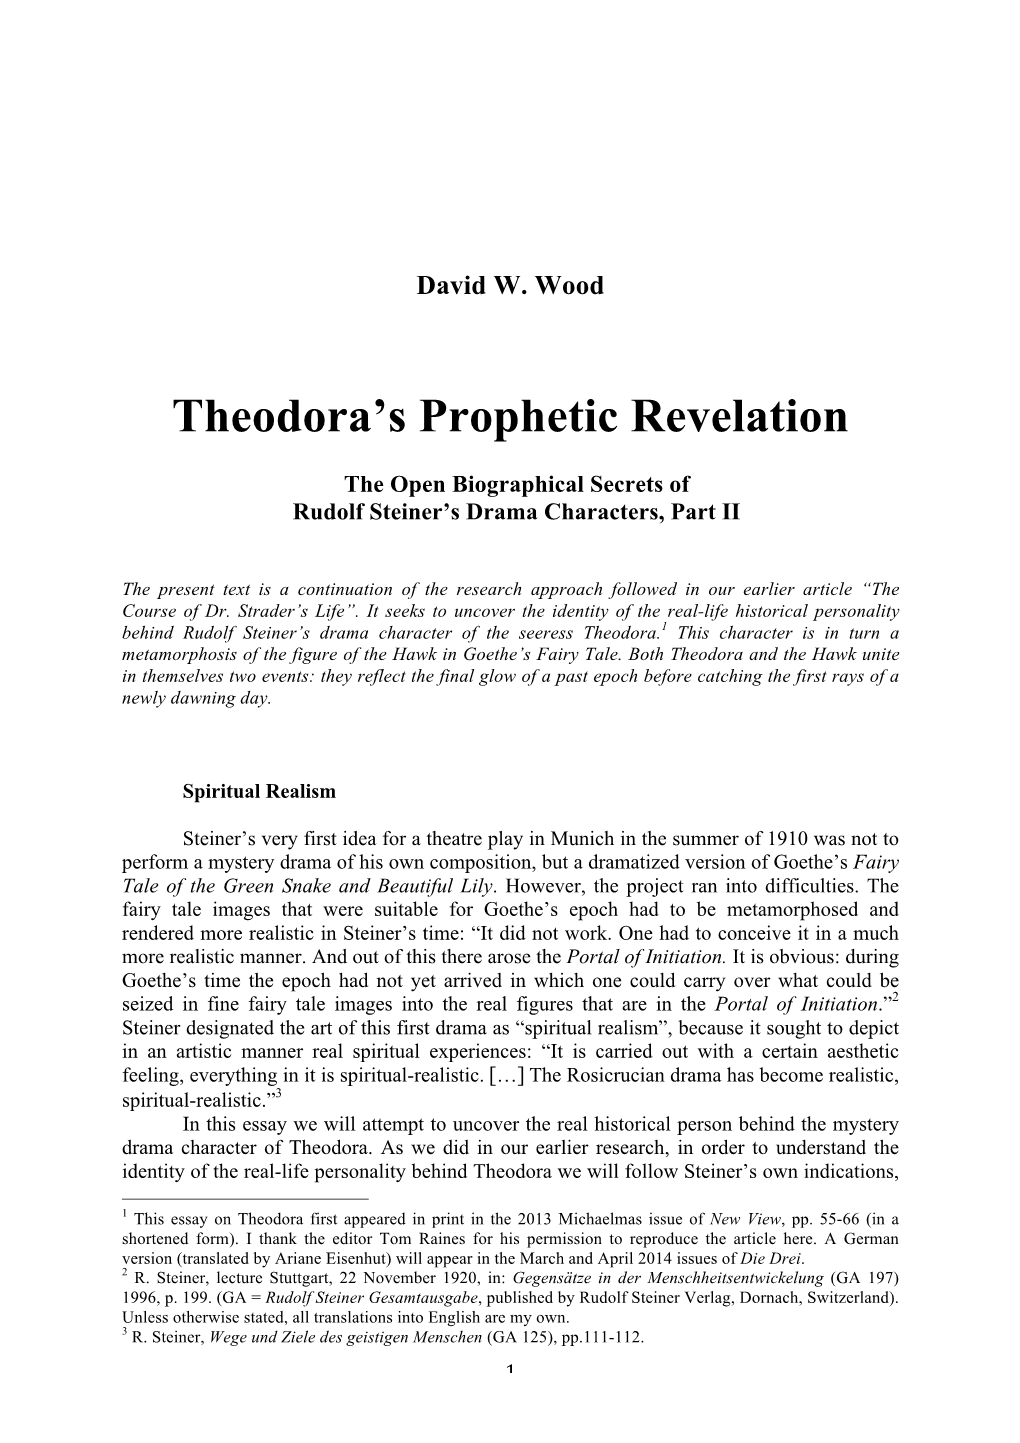 Theodora's Prophetic Revelation